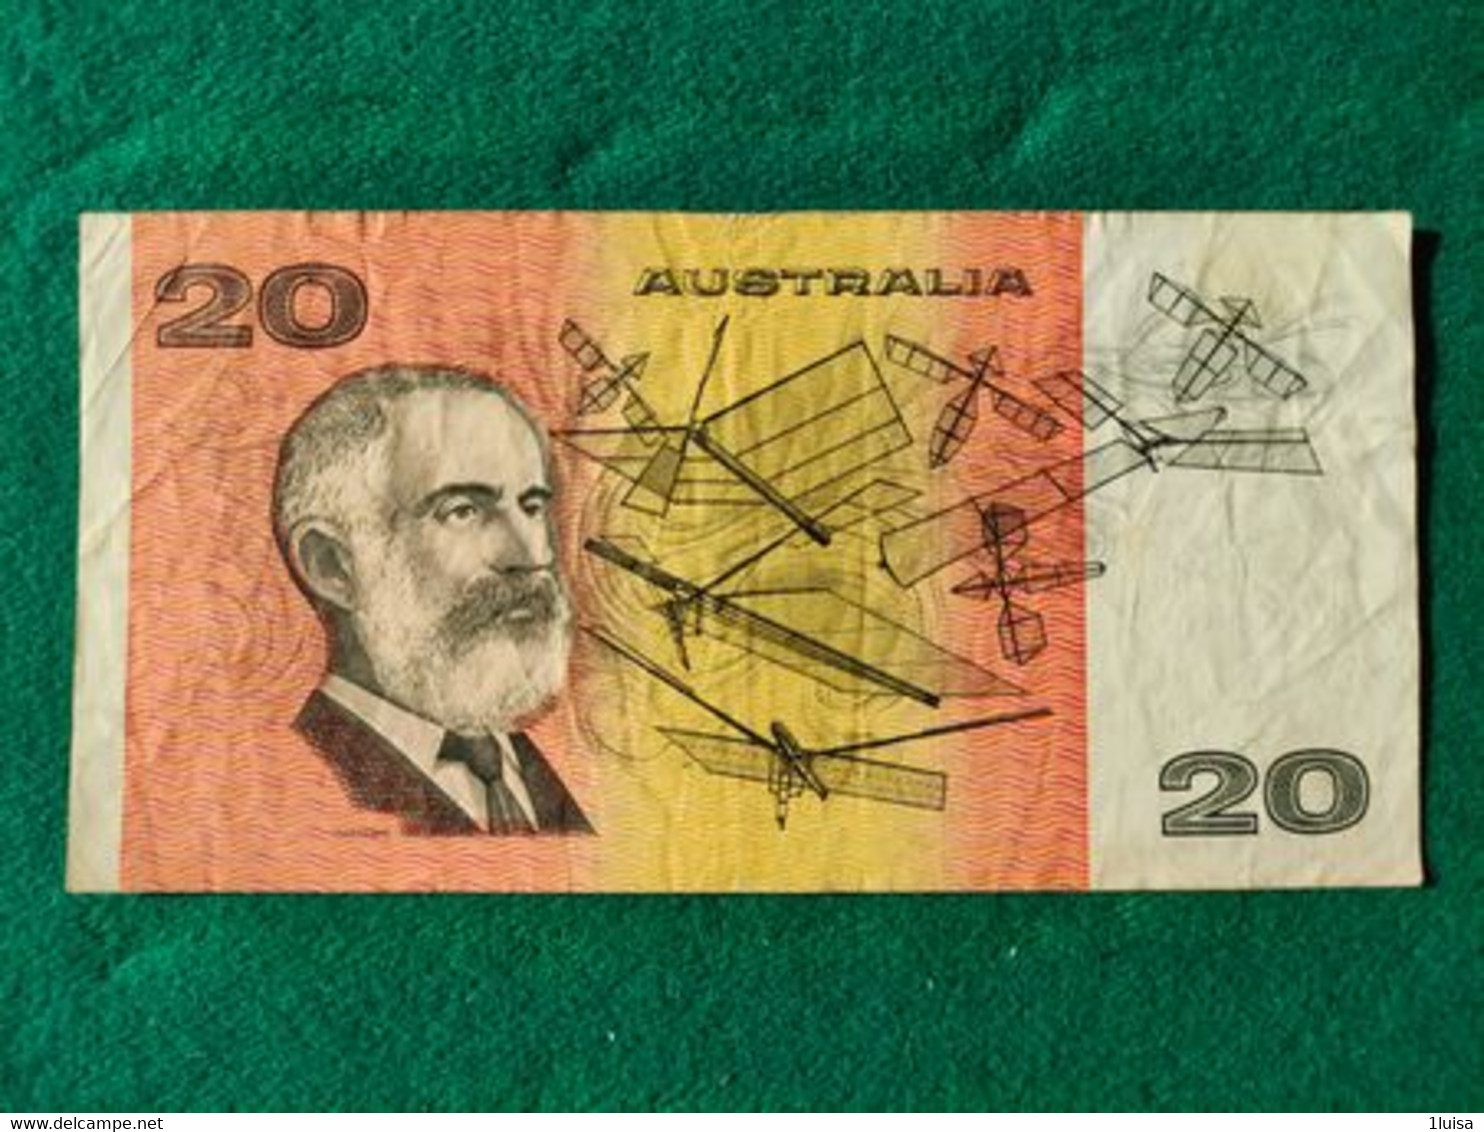 Australia 20 Dollari 1985 - 1988 (10$ Kunststoffgeldscheine)